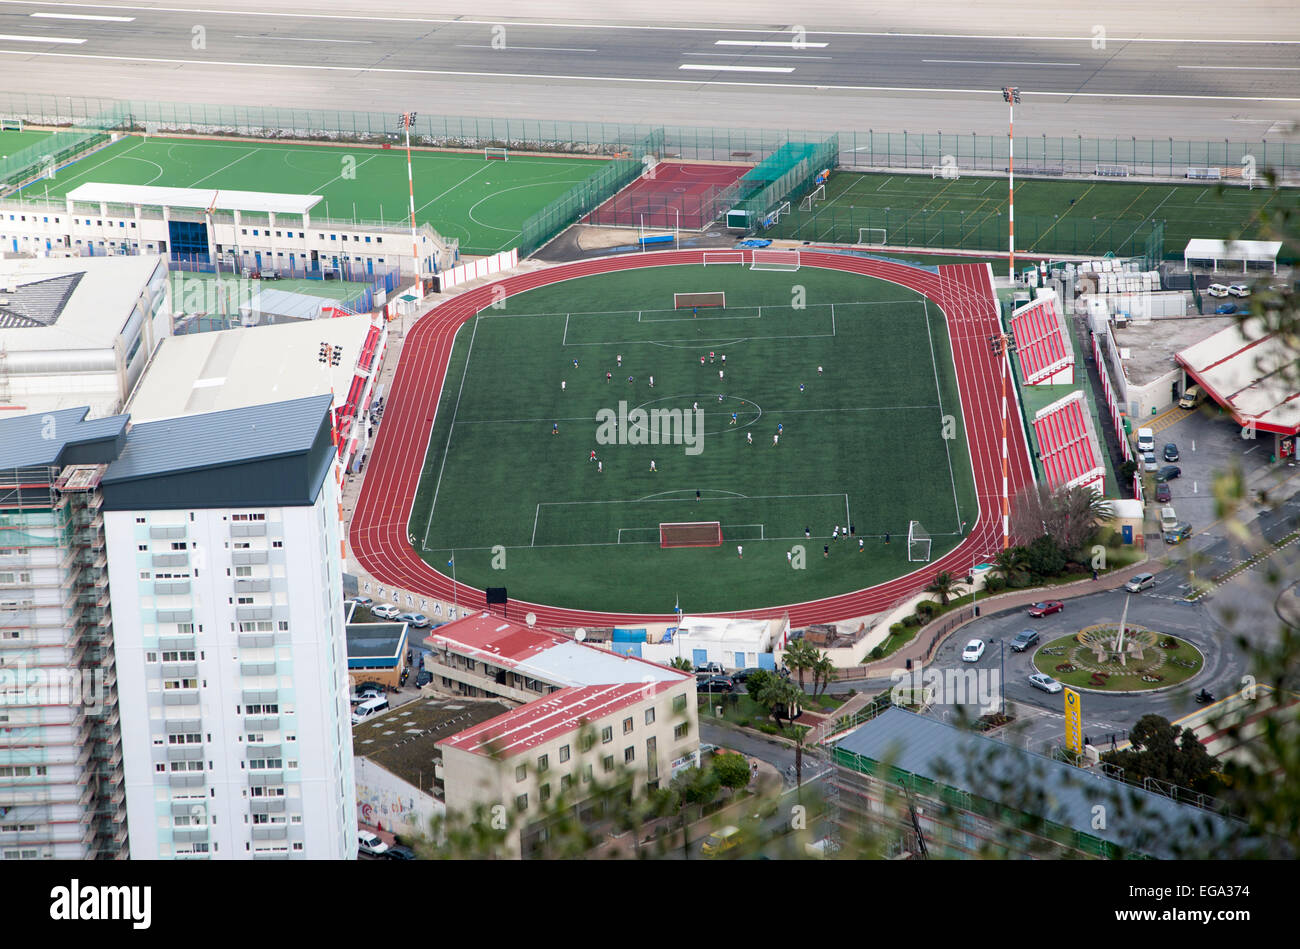 Gibilterra, Territorio britannico in Europa meridionale Victoria stadium fin dal 2014 un luogo di ritrovo per le partite di calcio internazionale Foto Stock